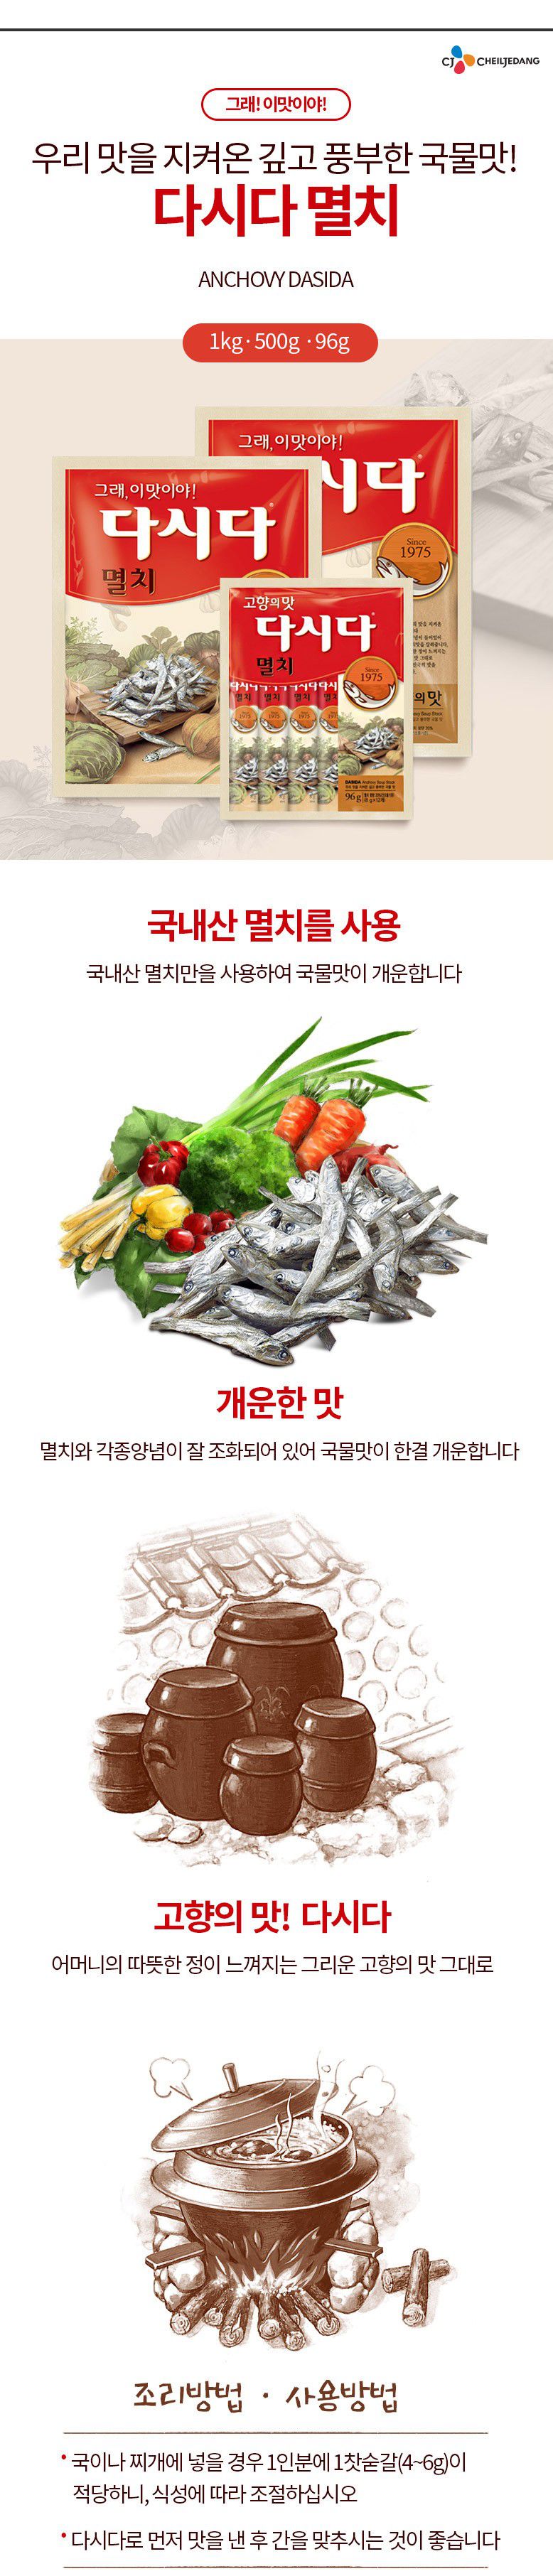 韓國食品-[CJ] Dasida Soup Stock[Anchovy] 1kg